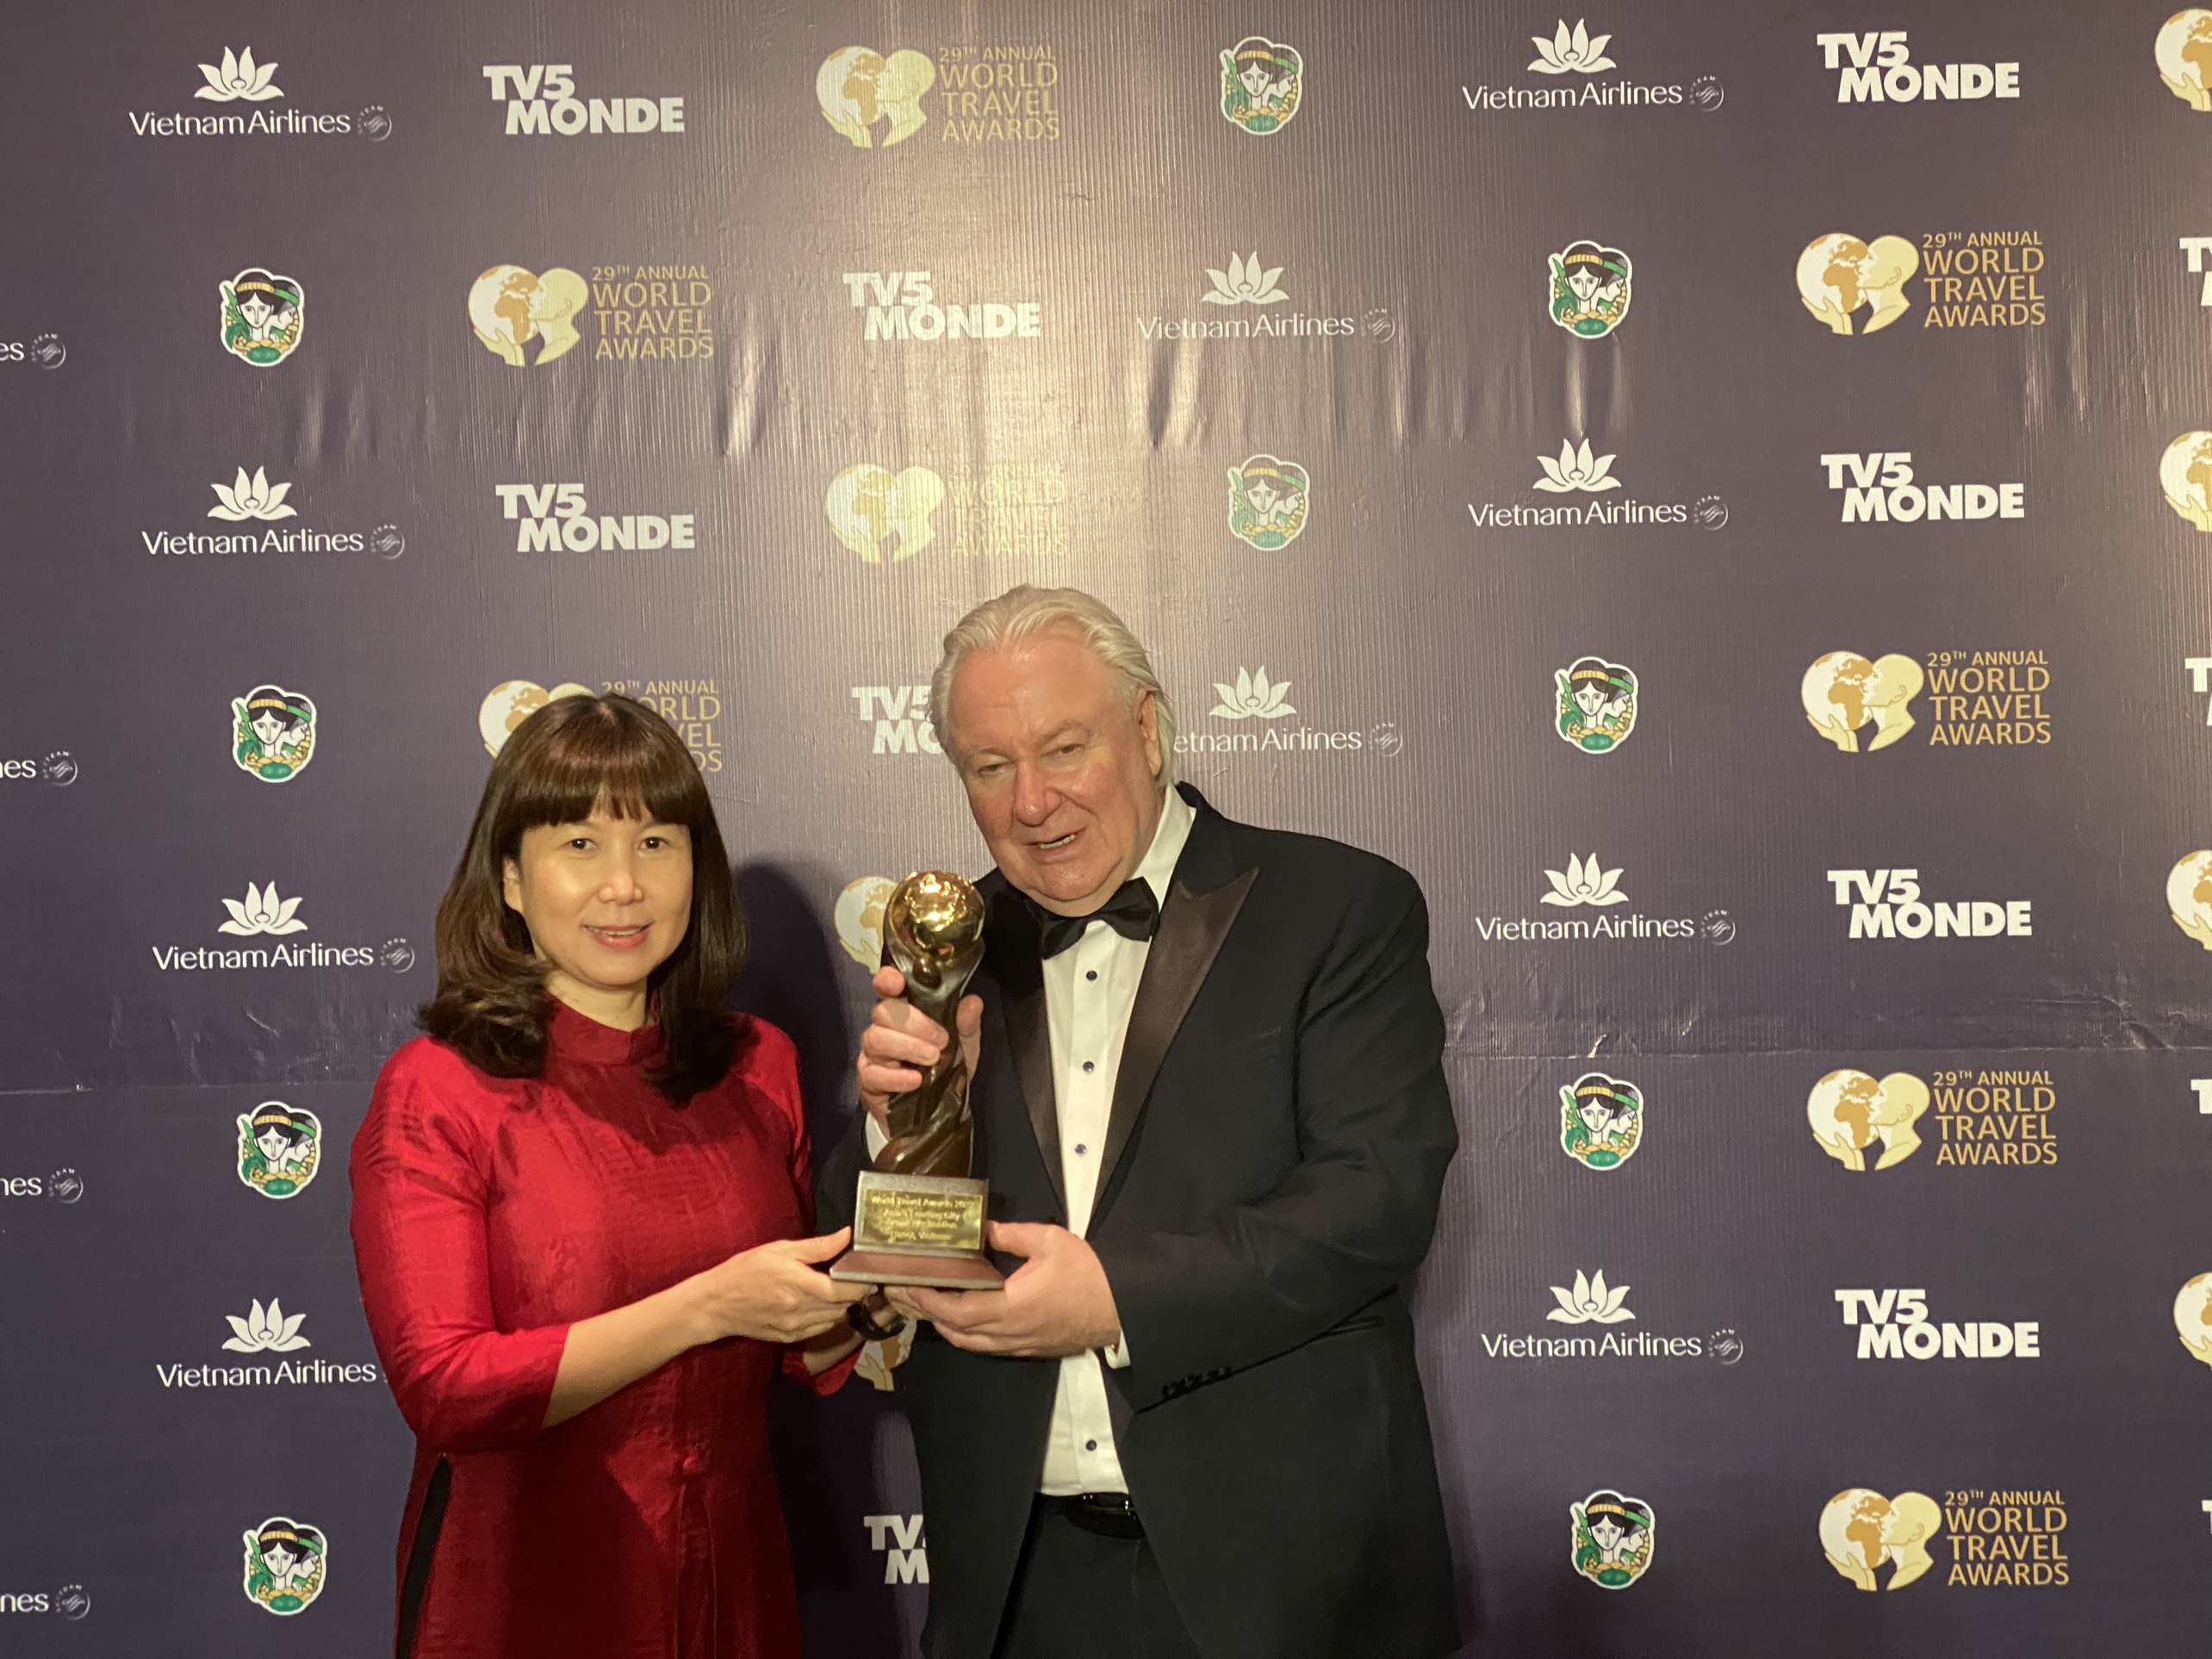 Giám đốc Sở Du lịch Hà Nội, Đặng Hương Giang nhận Giải thưởng Điểm đến du lịch thành phố hàng đầu châu Á năm 2022 của World Travel Awards 2022